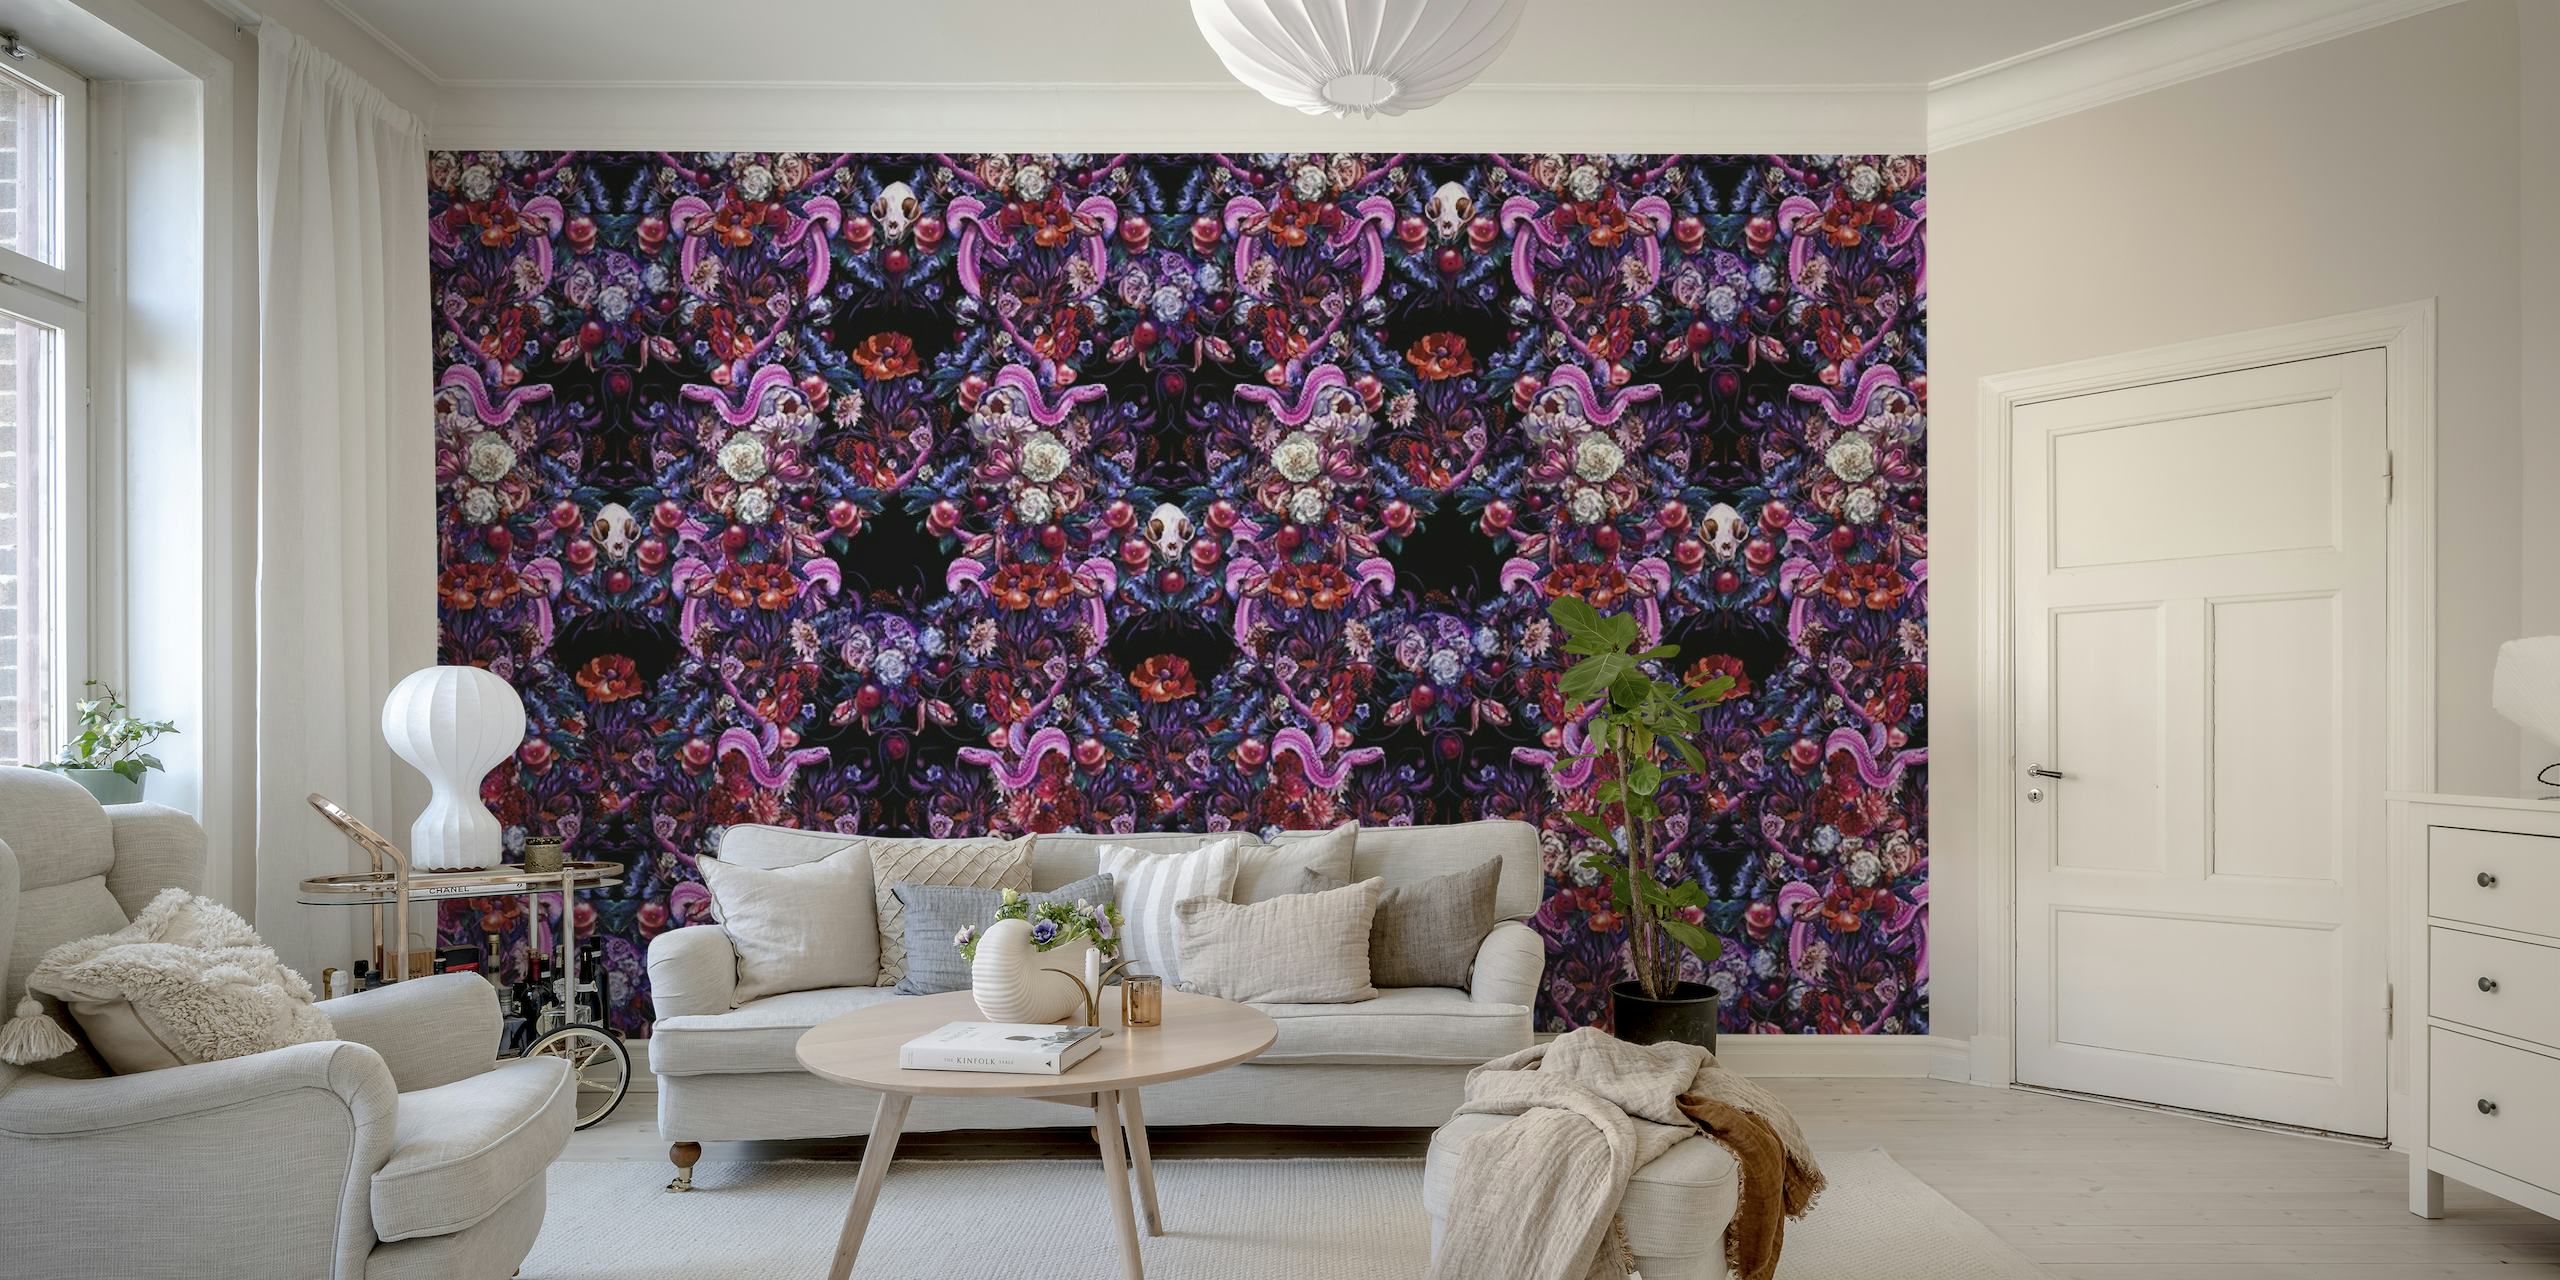 Mural de pared de inspiración gótica con un patrón simétrico de serpientes, calaveras y flores en tonos morado, rosa y azul.